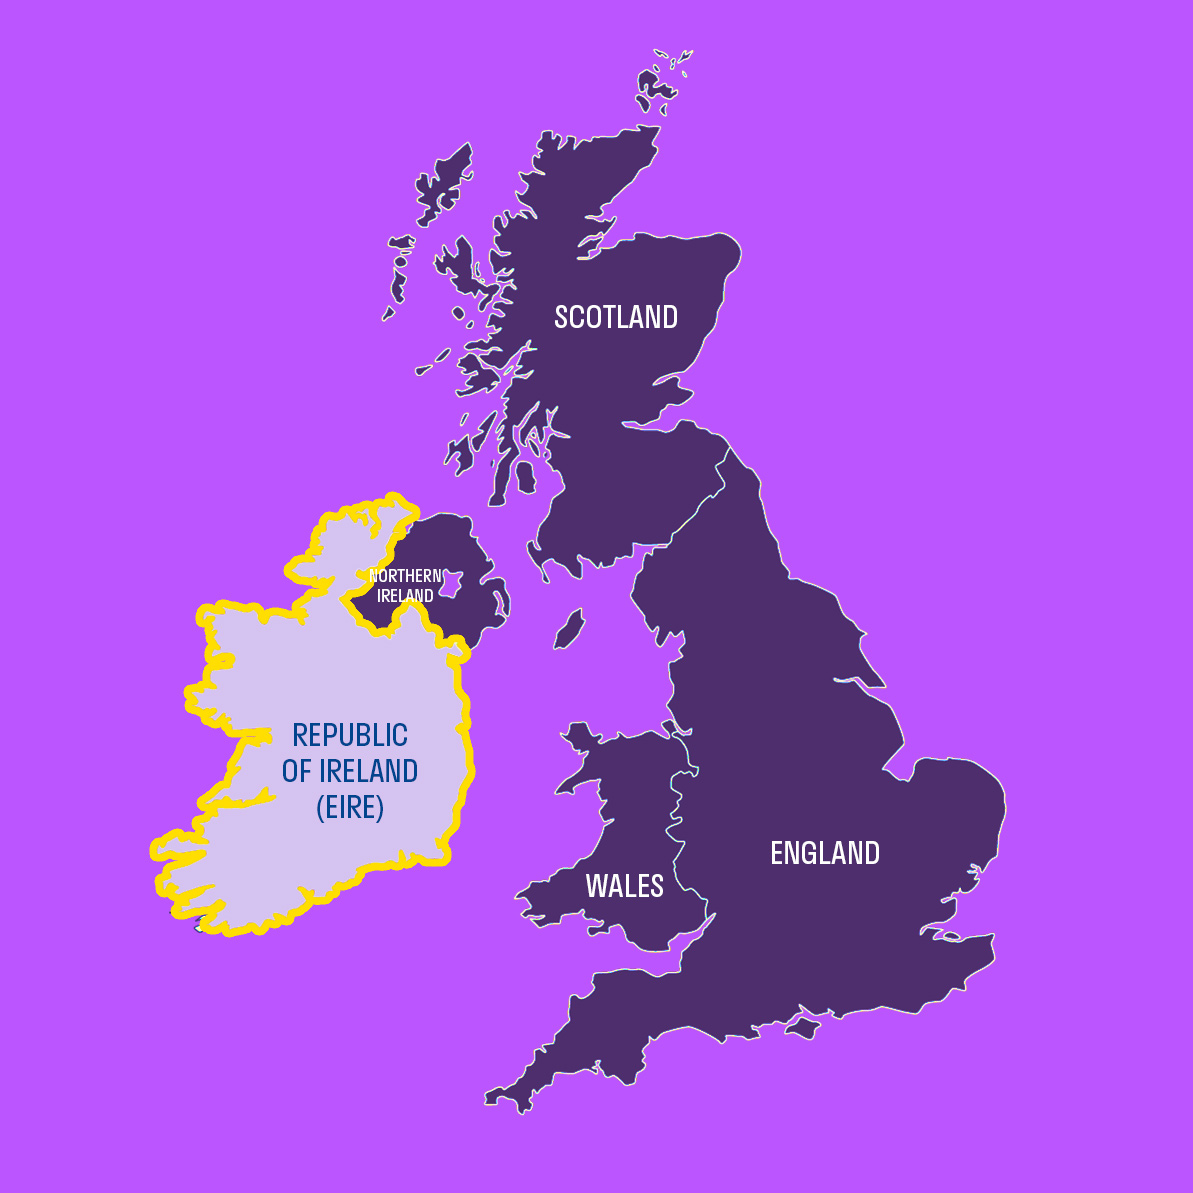 Англия, Британия, Великобритания — это одно и то же? Или разное? Показываем на карте